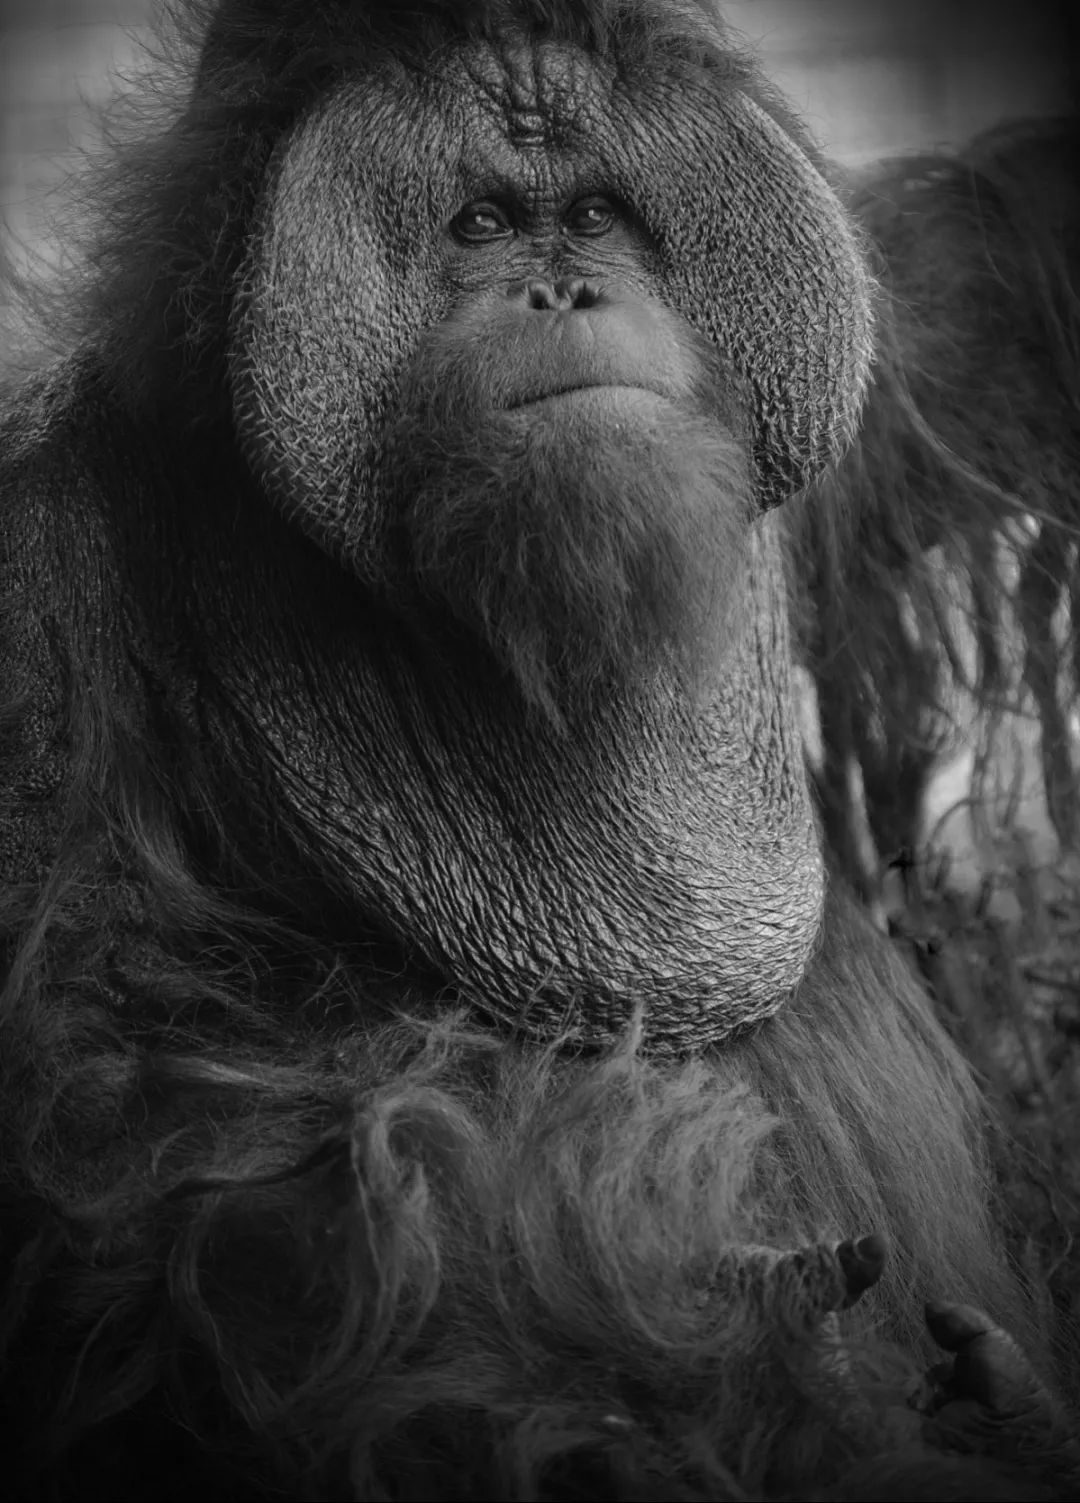 上海动物园45岁猩猩森泰离世，是目前国内动物园最年长猩猩